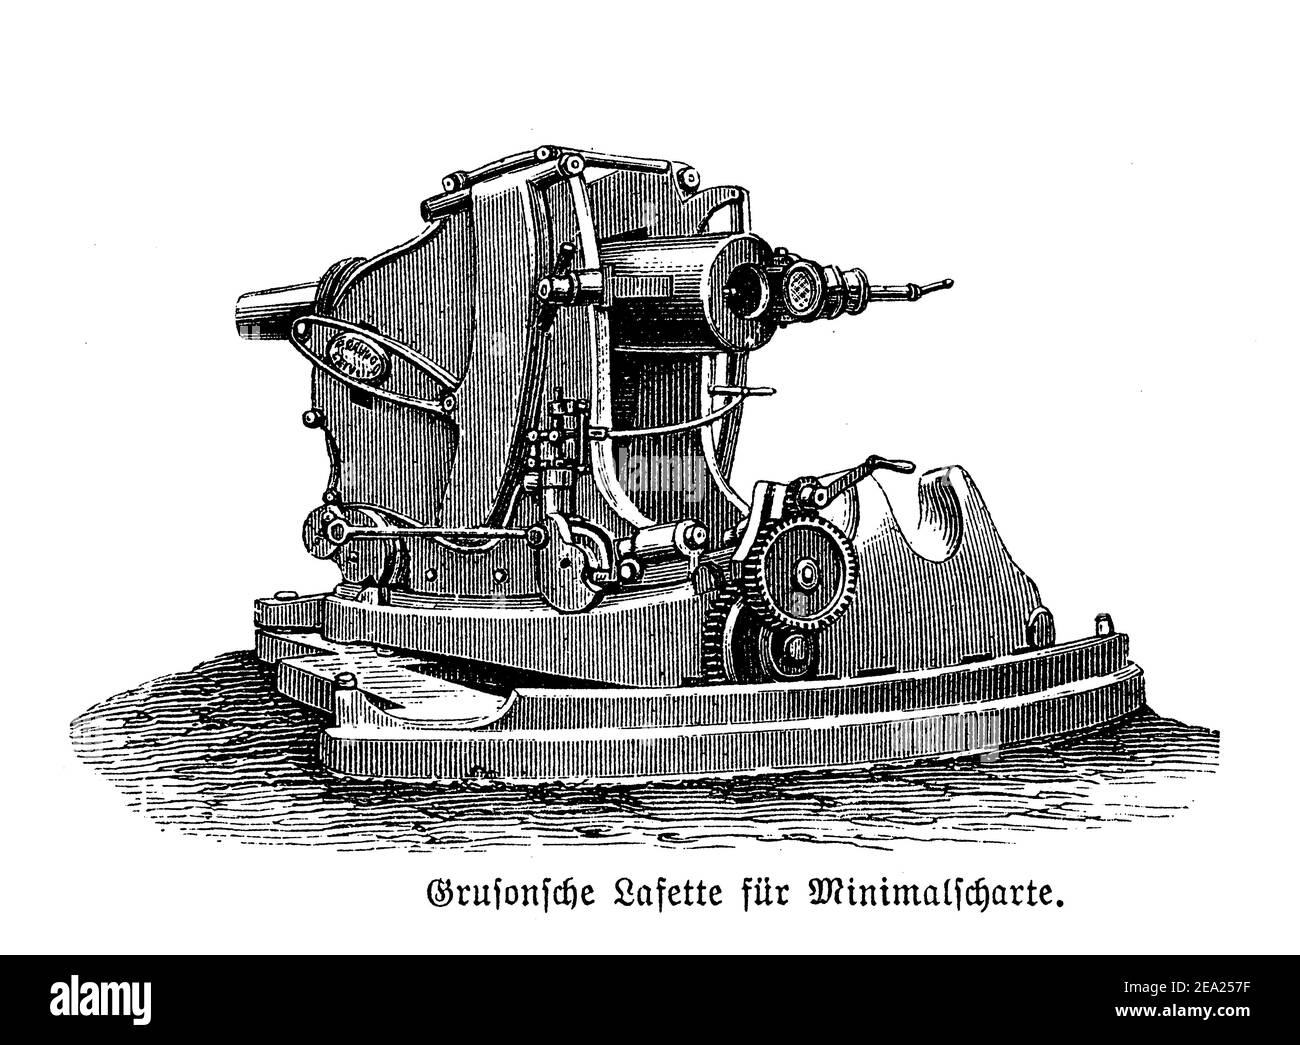 Gruson Revolver Pistole auf Rädern montiert, surelevated casemate Wagen für Nahbereich Verteidigung, Ende 19th Jahrhundert Stockfoto